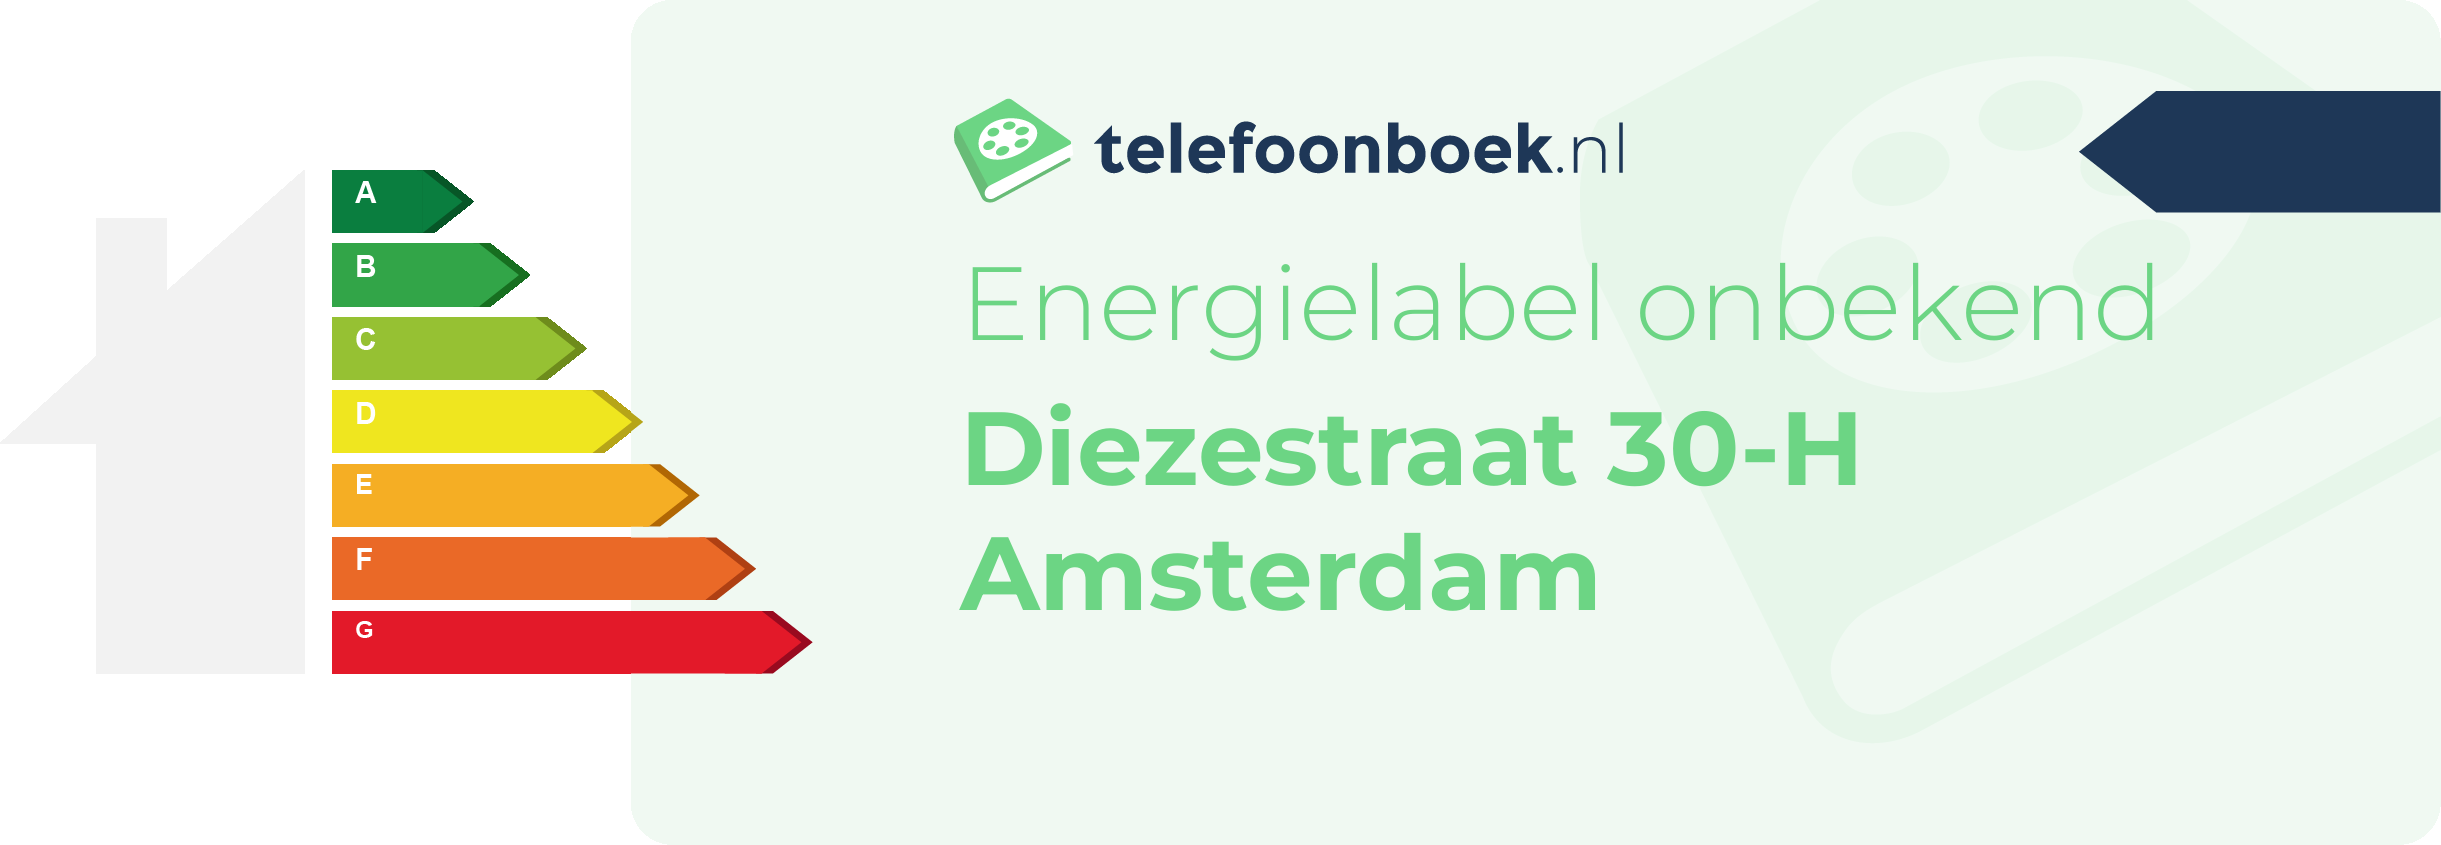 Energielabel Diezestraat 30-H Amsterdam